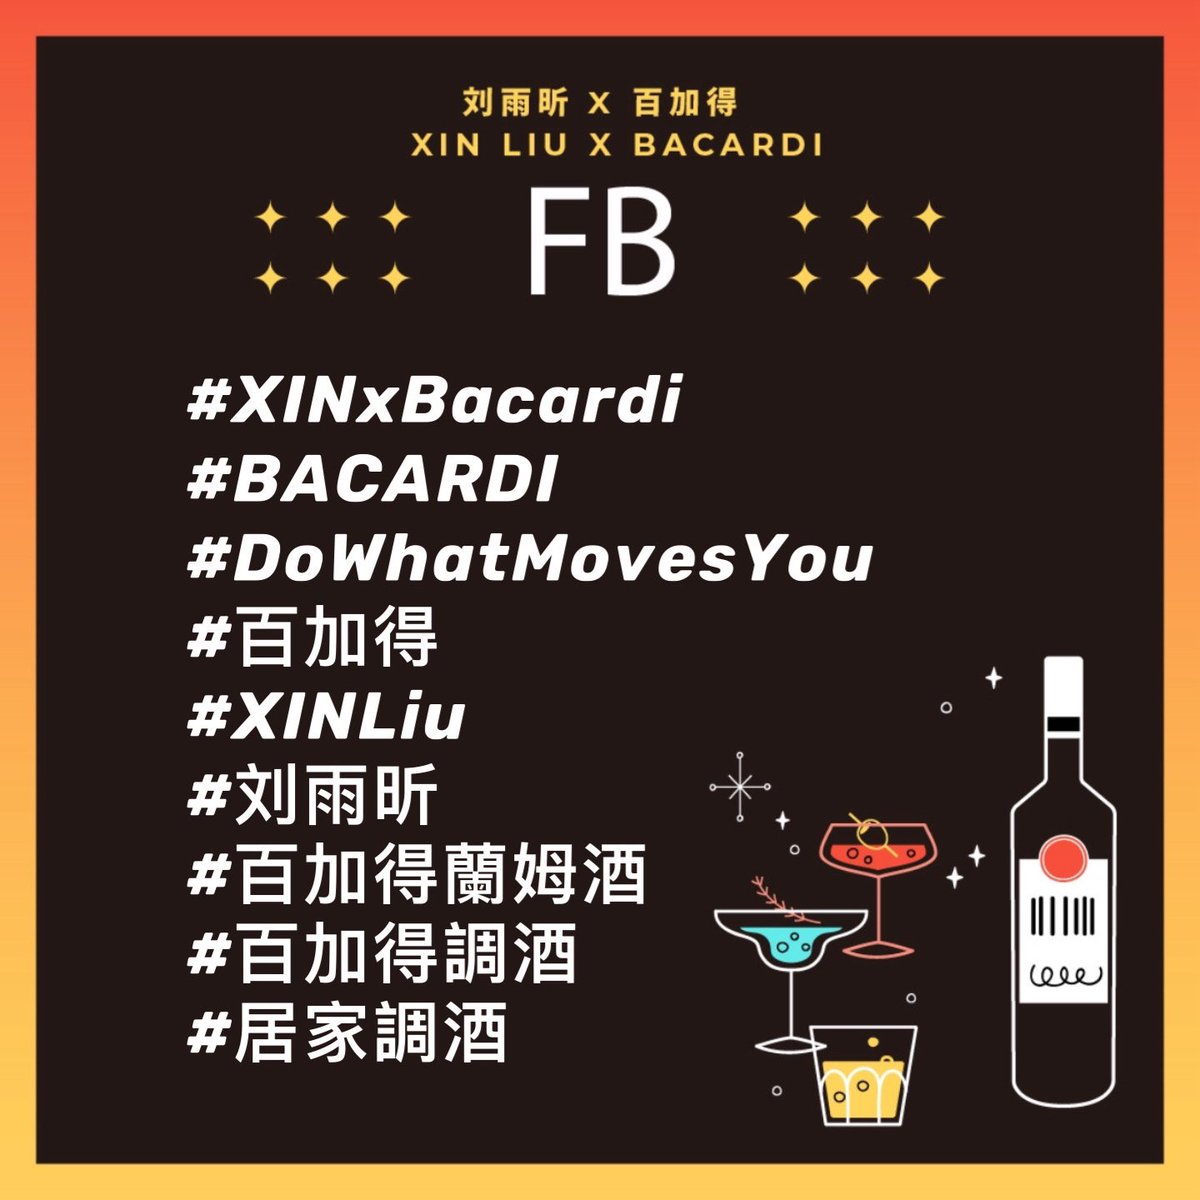 𝗡𝗲𝘄 𝗧𝗮𝗴𝘀｜𝐗𝐢𝐧 𝐋𝐢𝐮 𝐱 𝐁𝐚𝐜𝐚𝐫𝐝𝐢 

Free 'Xin' style, mix happy melodies with @XinLiulyx0420 ！

#XINxBacardi #BACARDI #XINLiu #LiuYuxin